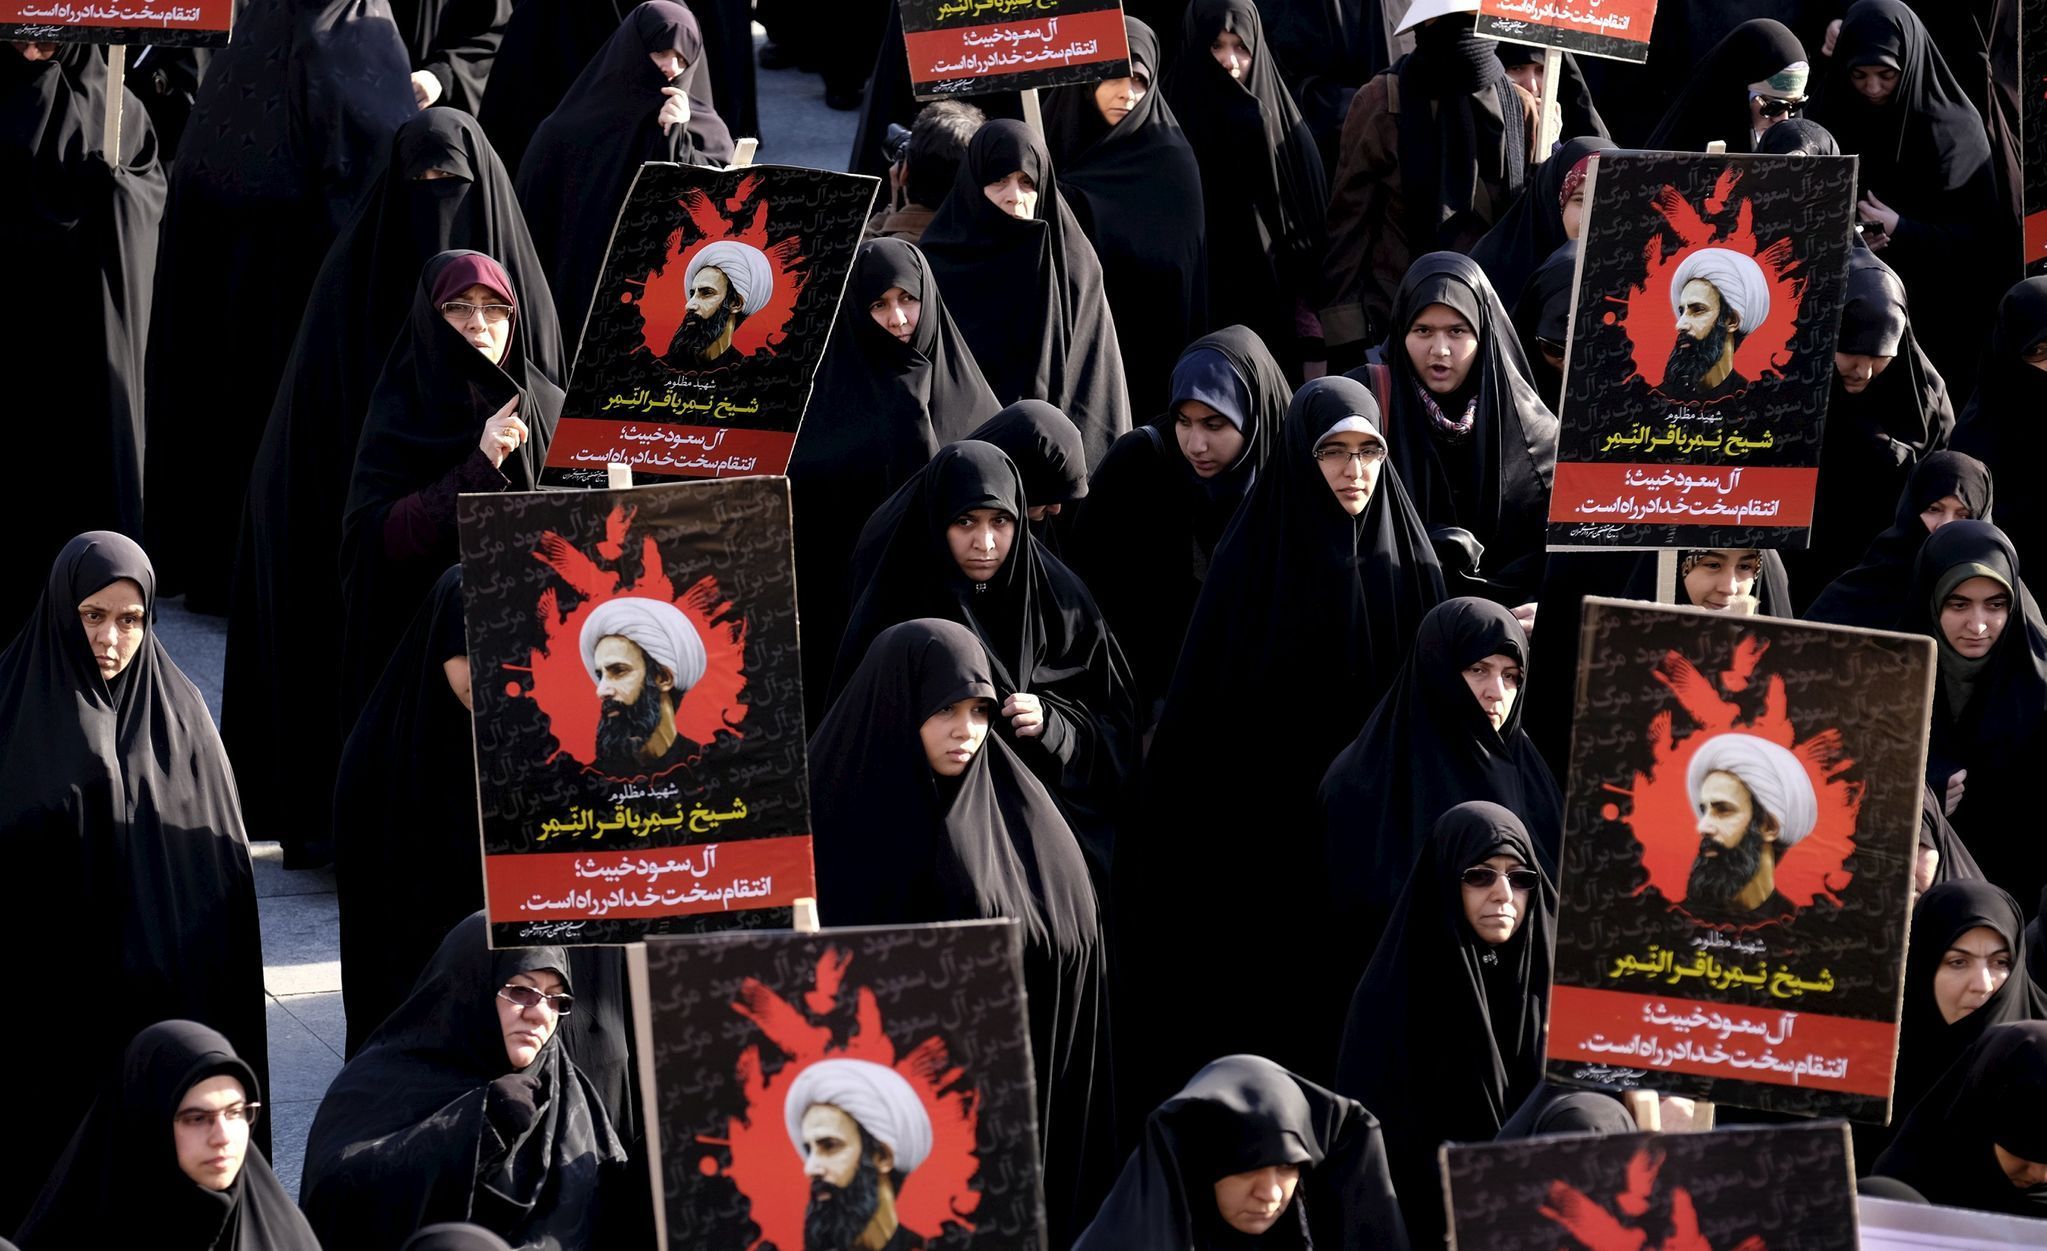 Íránky protestují v Teheránu proti popravě Nimra Bákira Nimra.